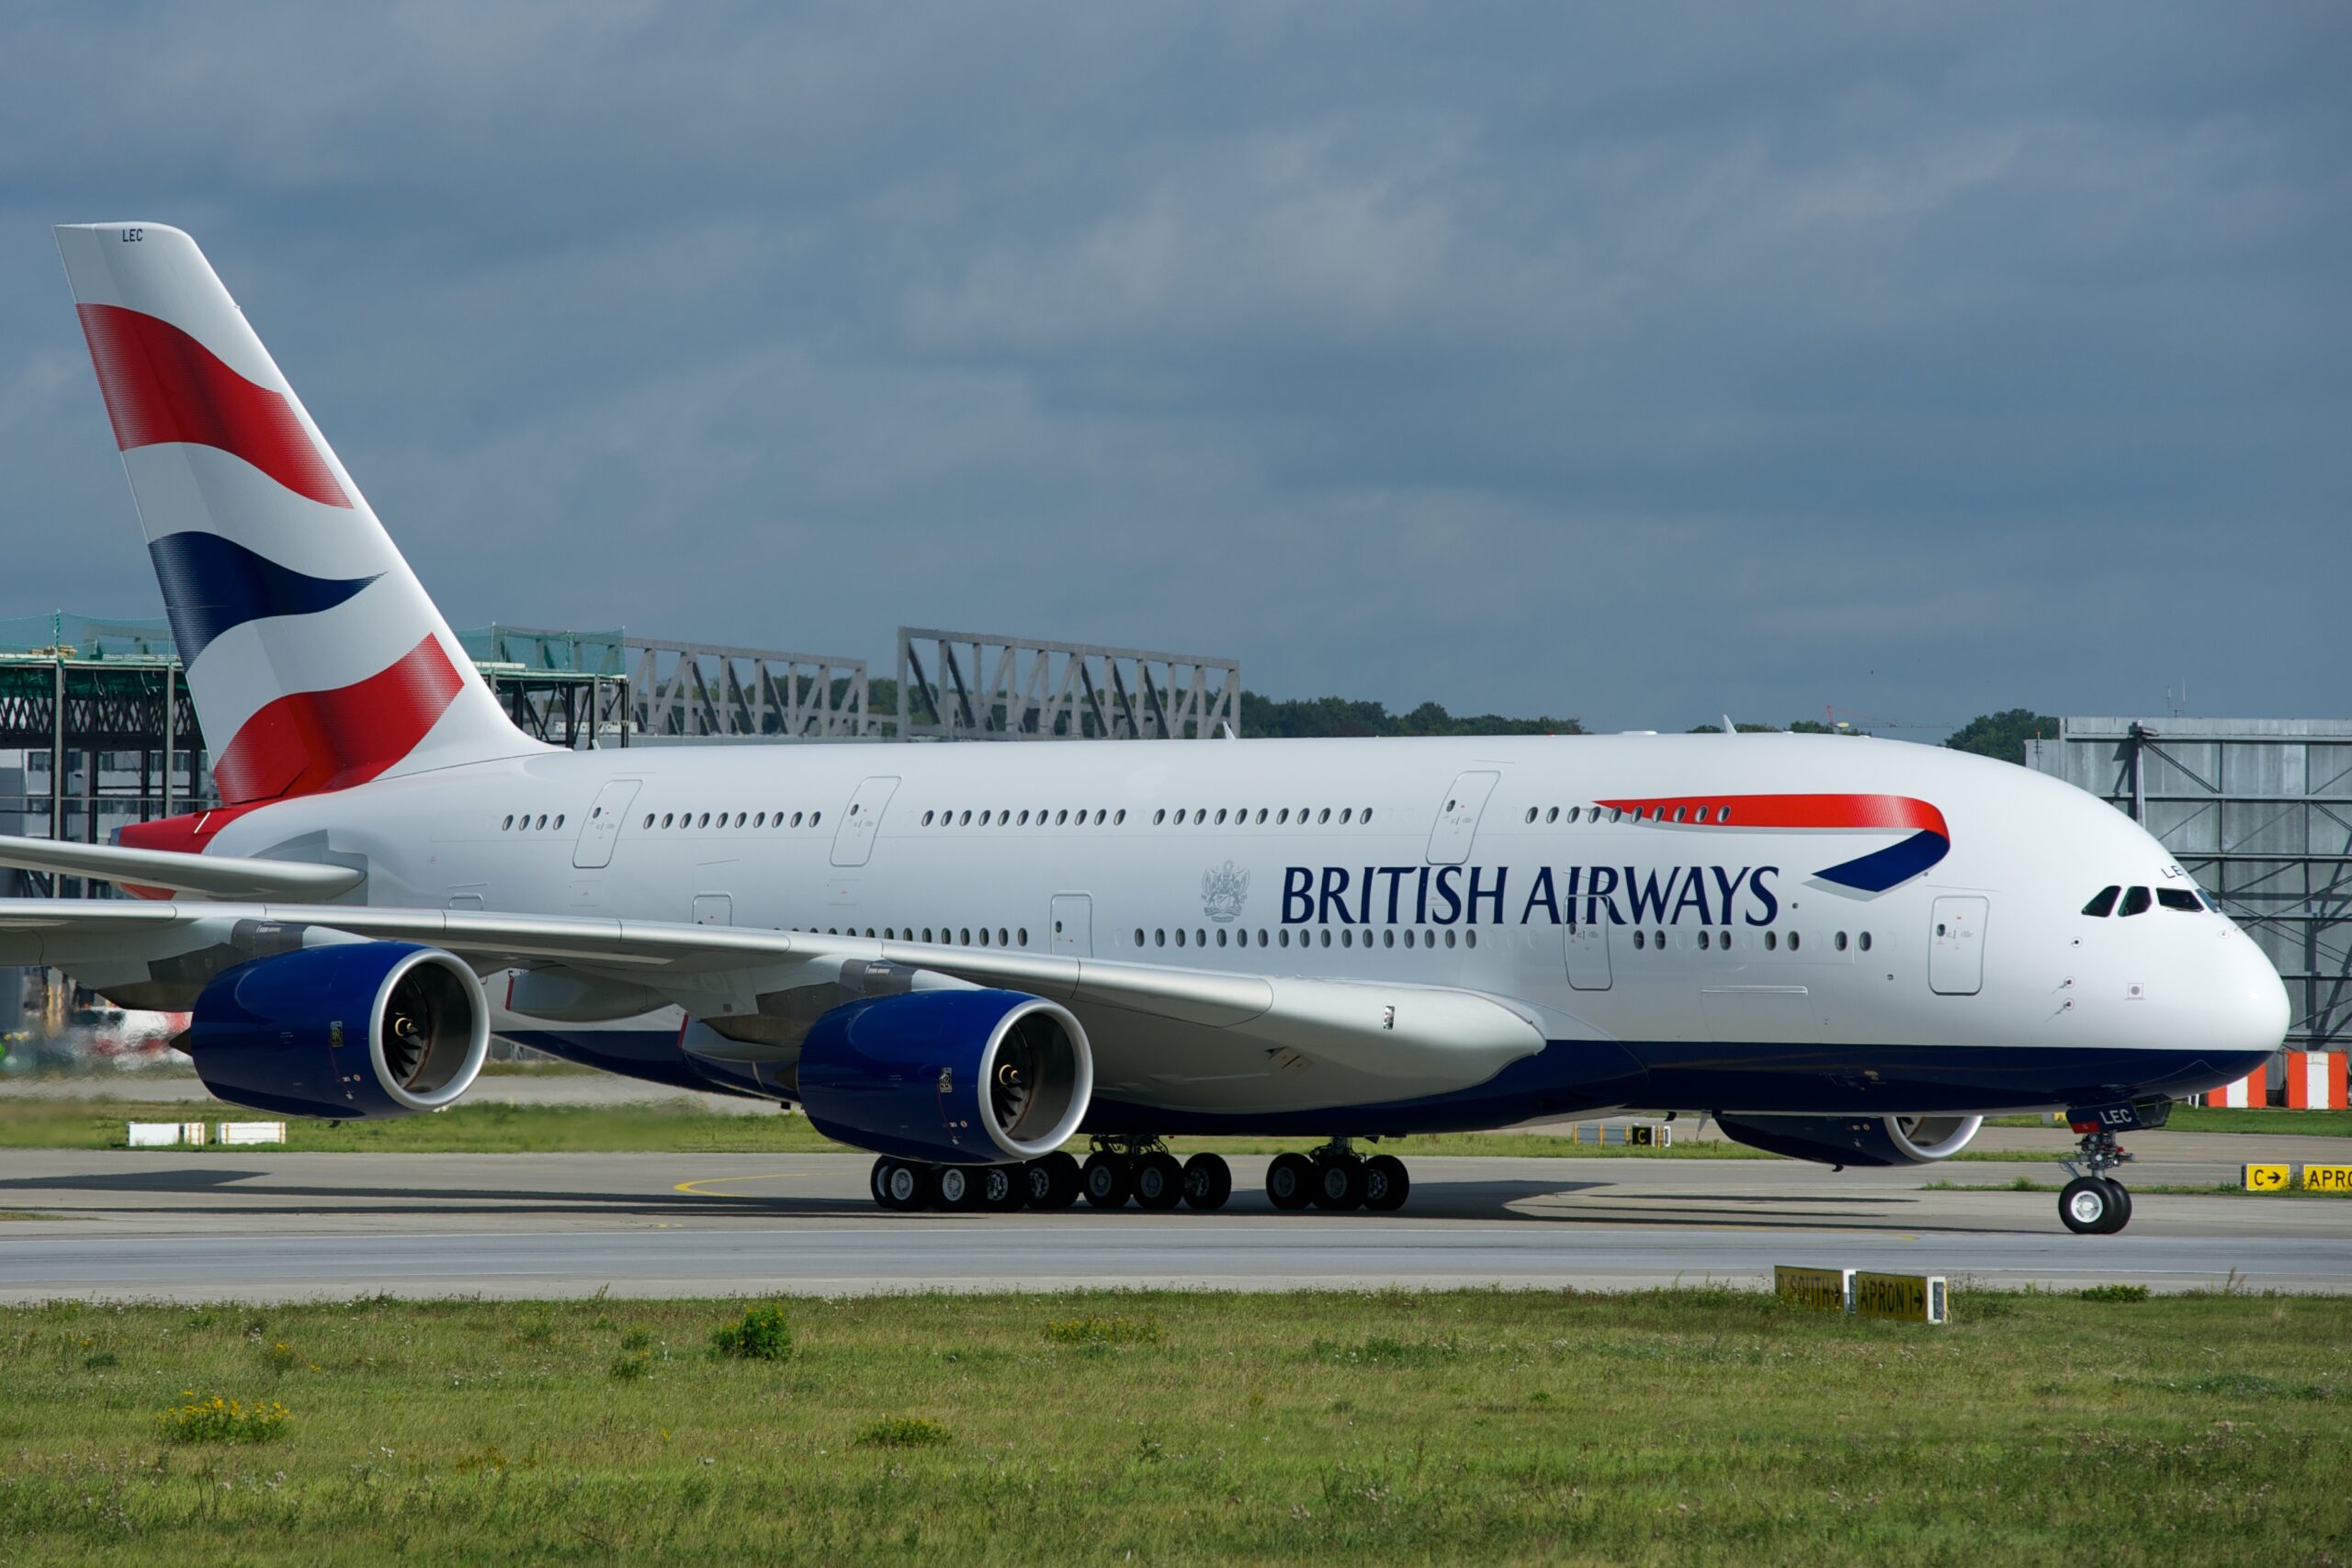 British Airways A380-800